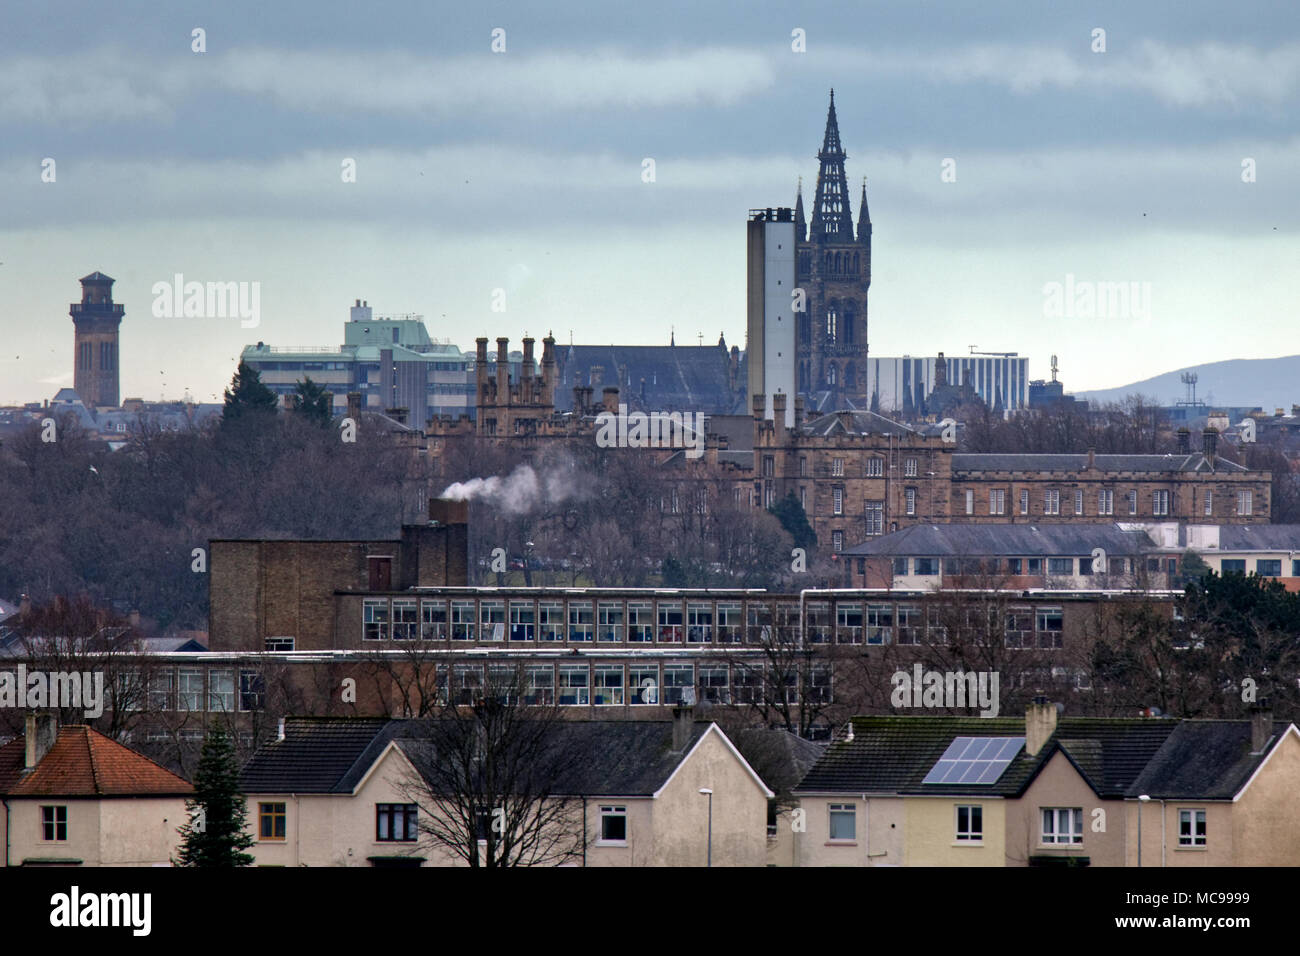 Der Universität Glasgow Uhrturm mit knightswood gartnaval Krankenhaus und Schule in eine komprimierte Ansicht von Glasgow's West End. Stockfoto